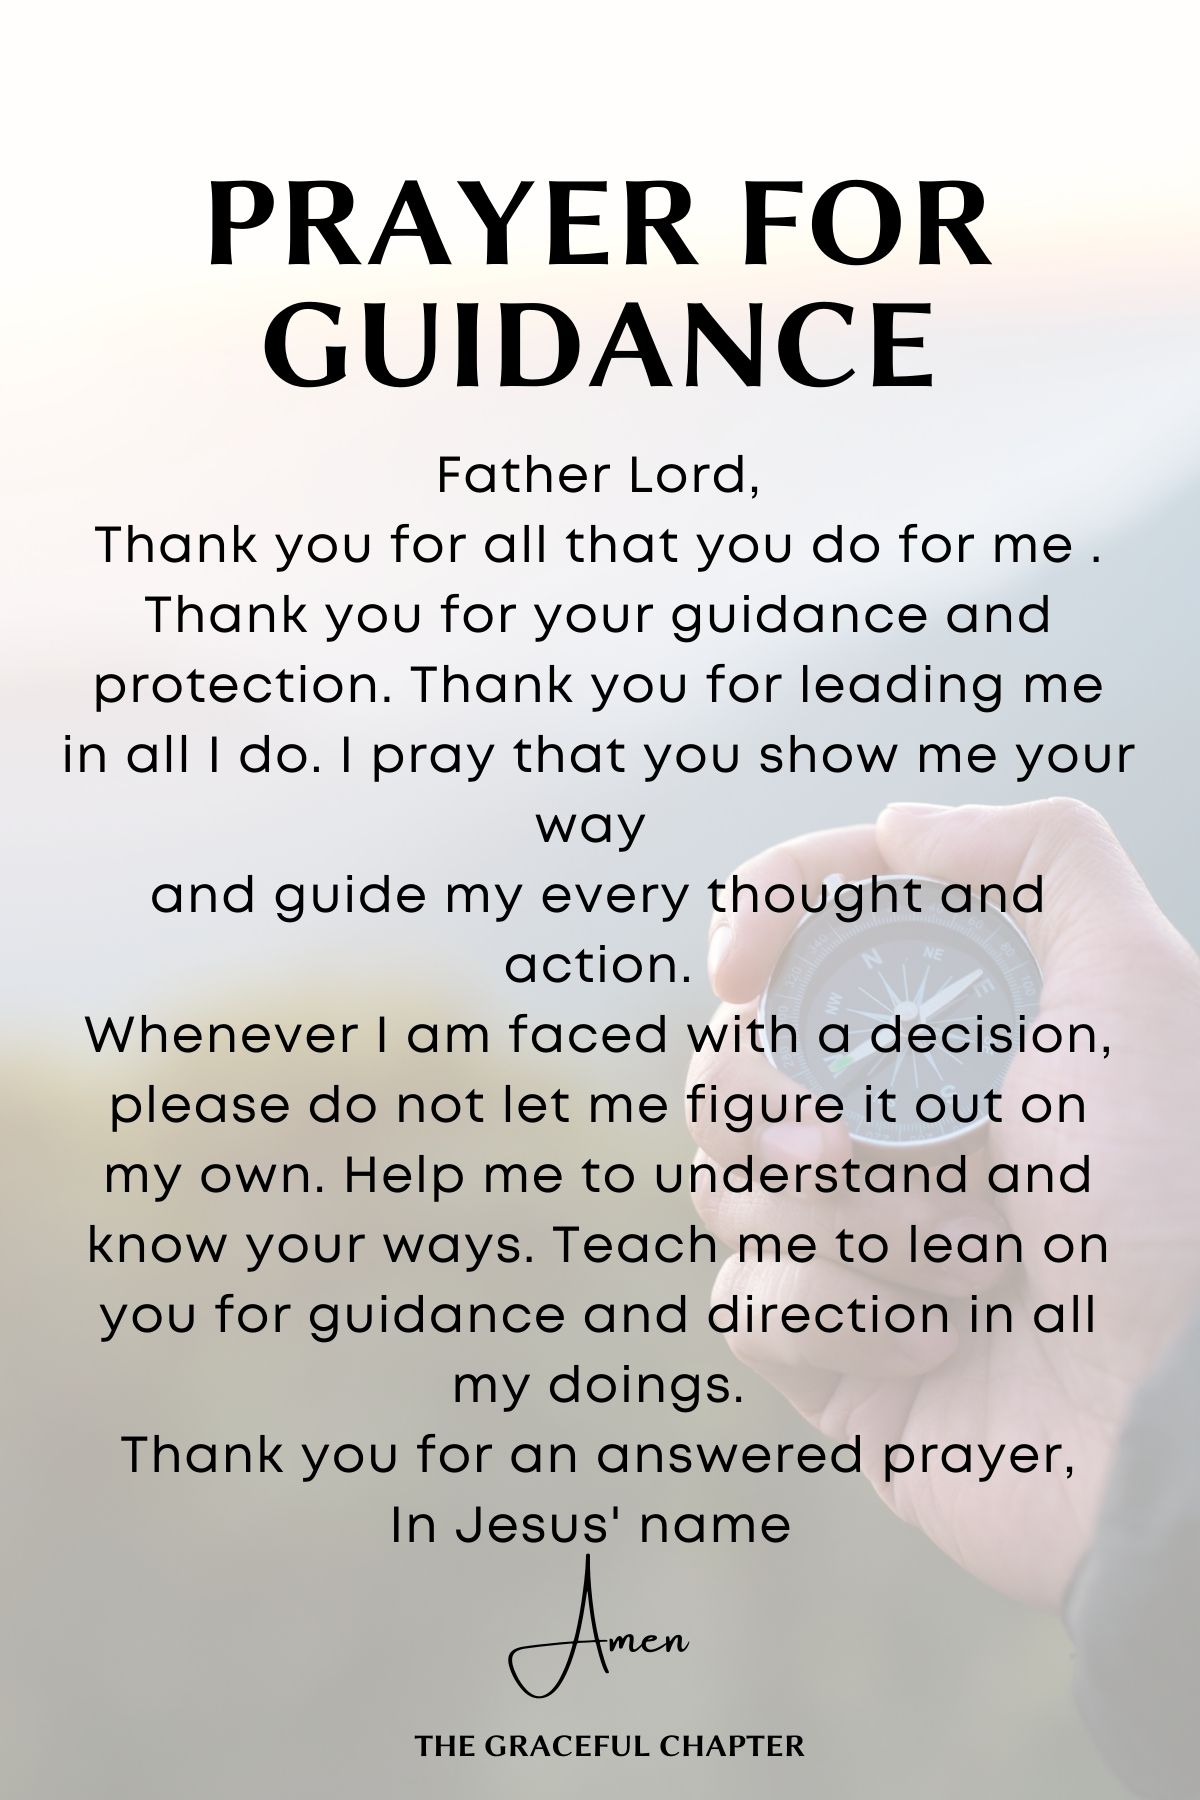 Prayer for guidance